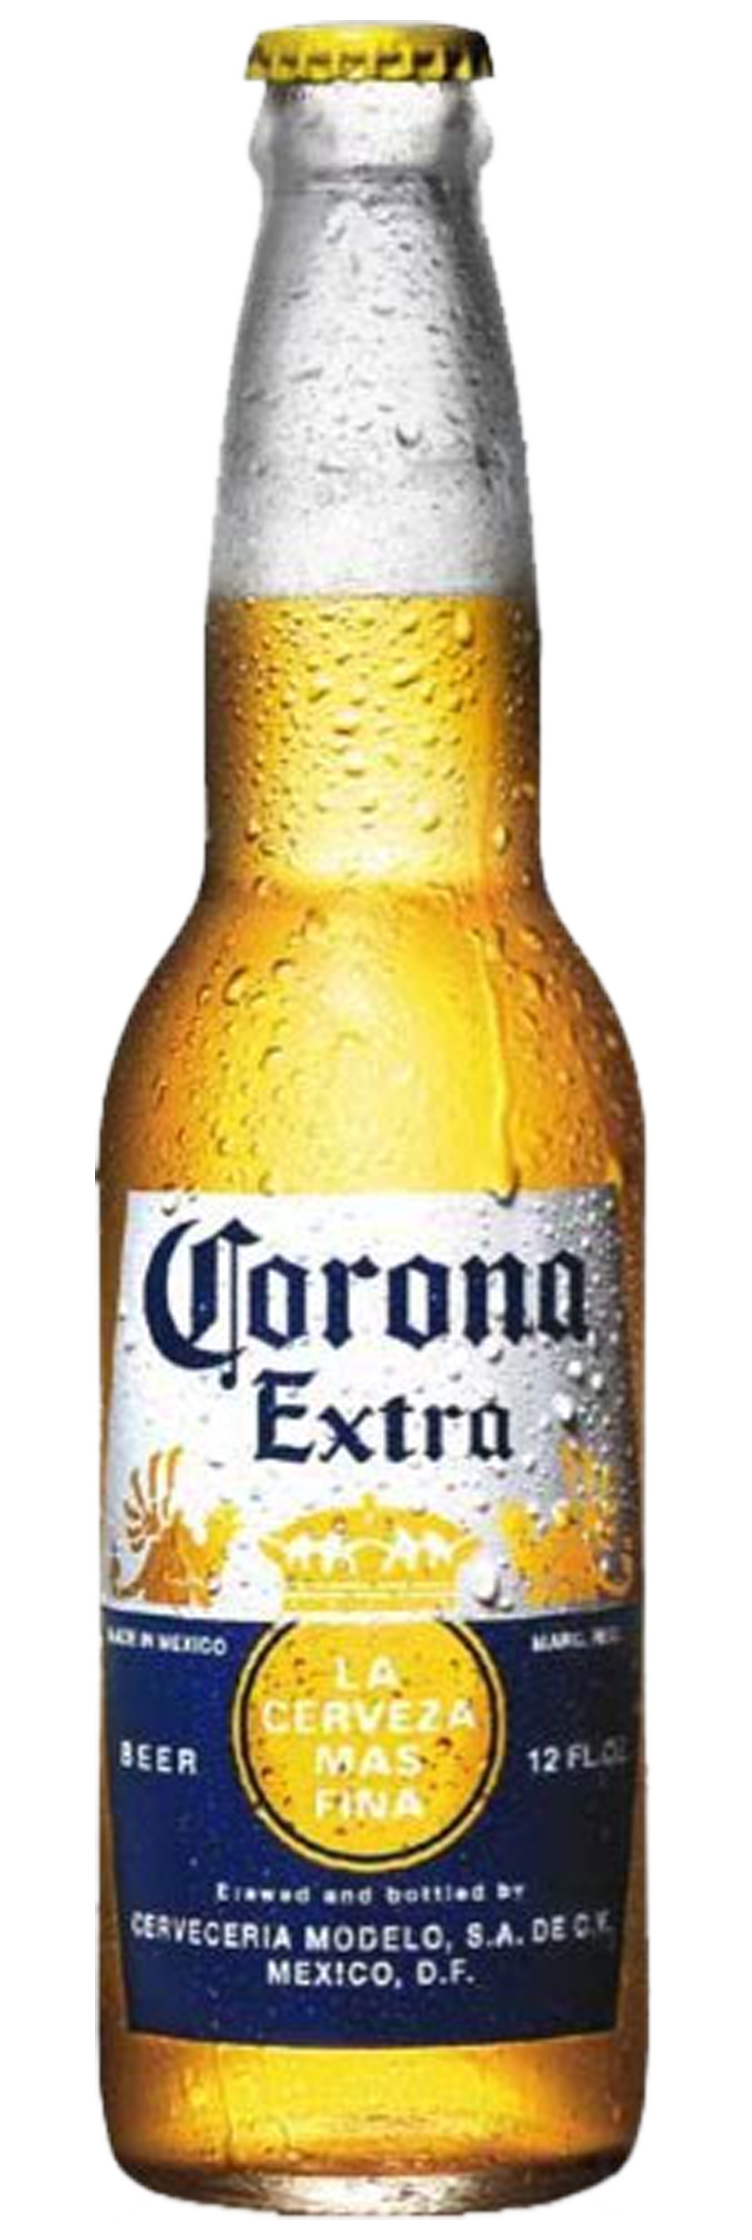 Corona Lager 24 x 330ml